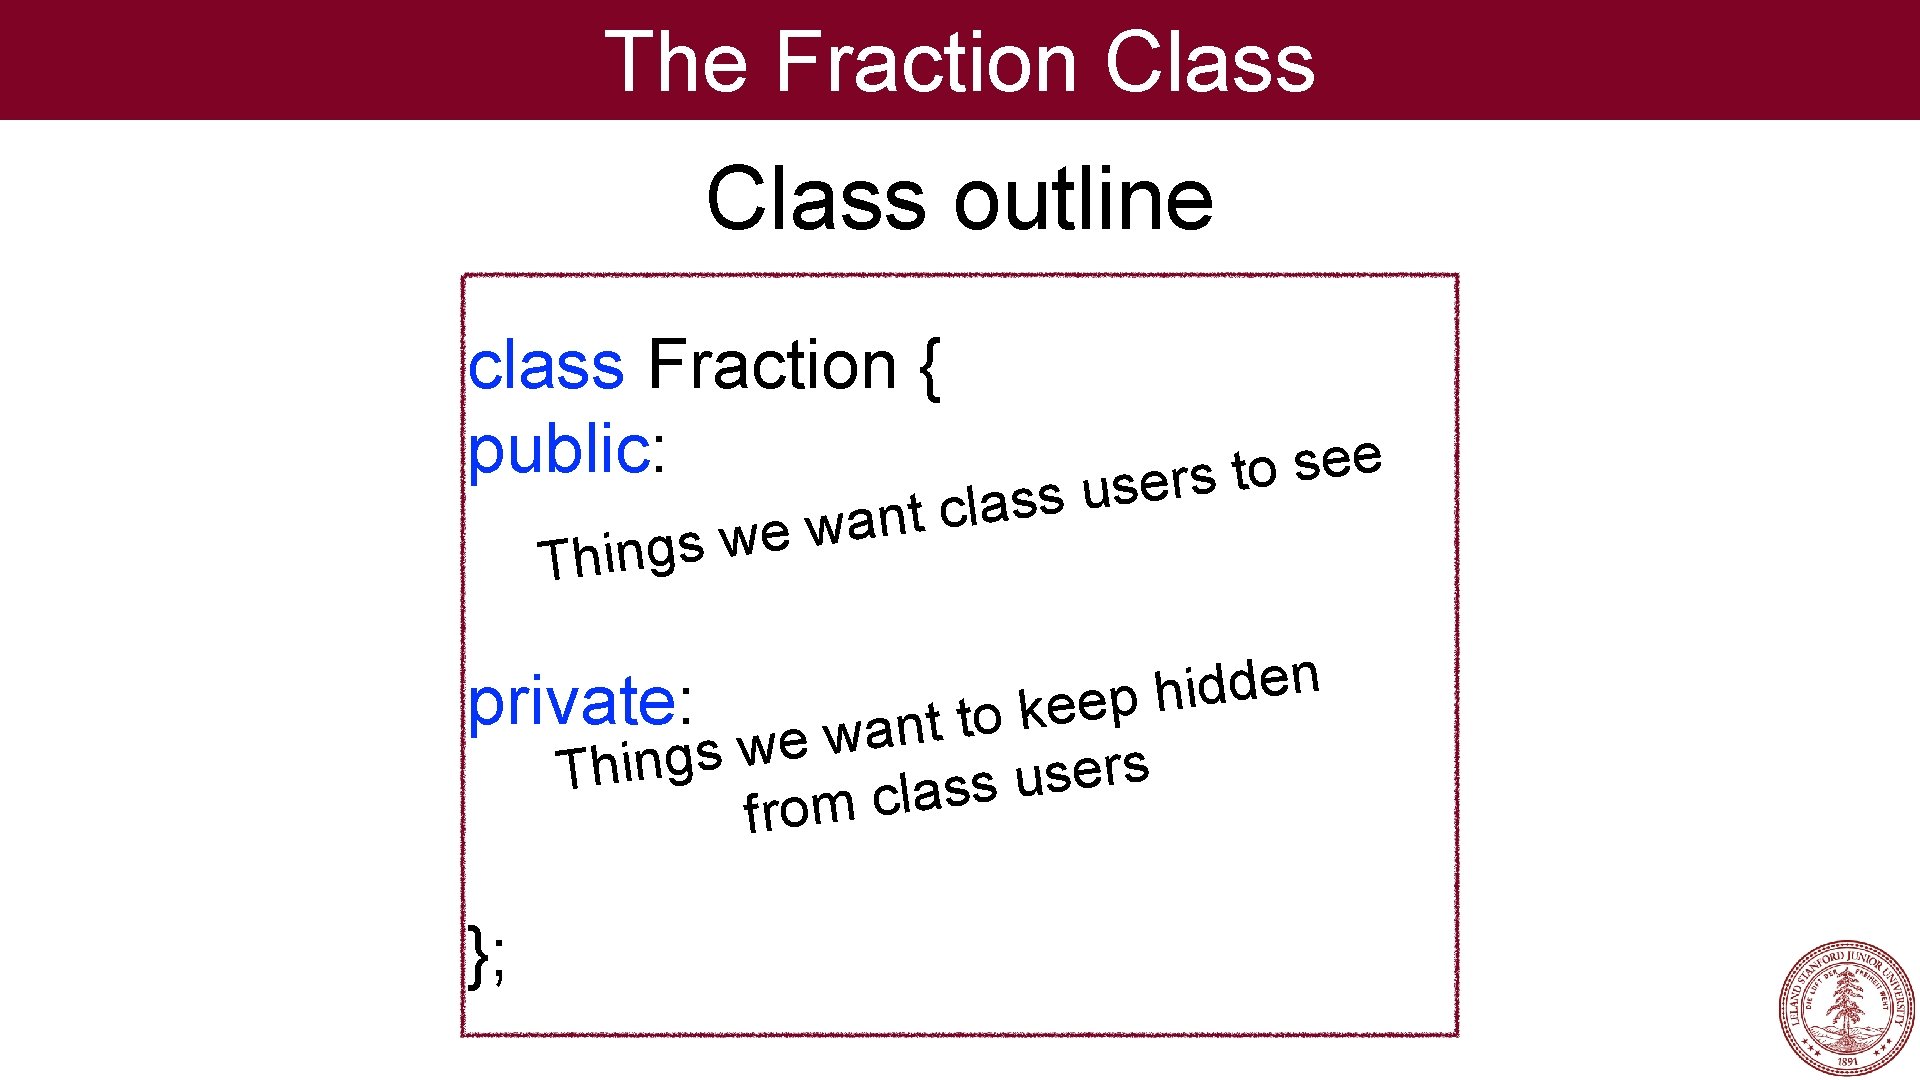 The Fraction Class outline class Fraction { public: a w e w s g